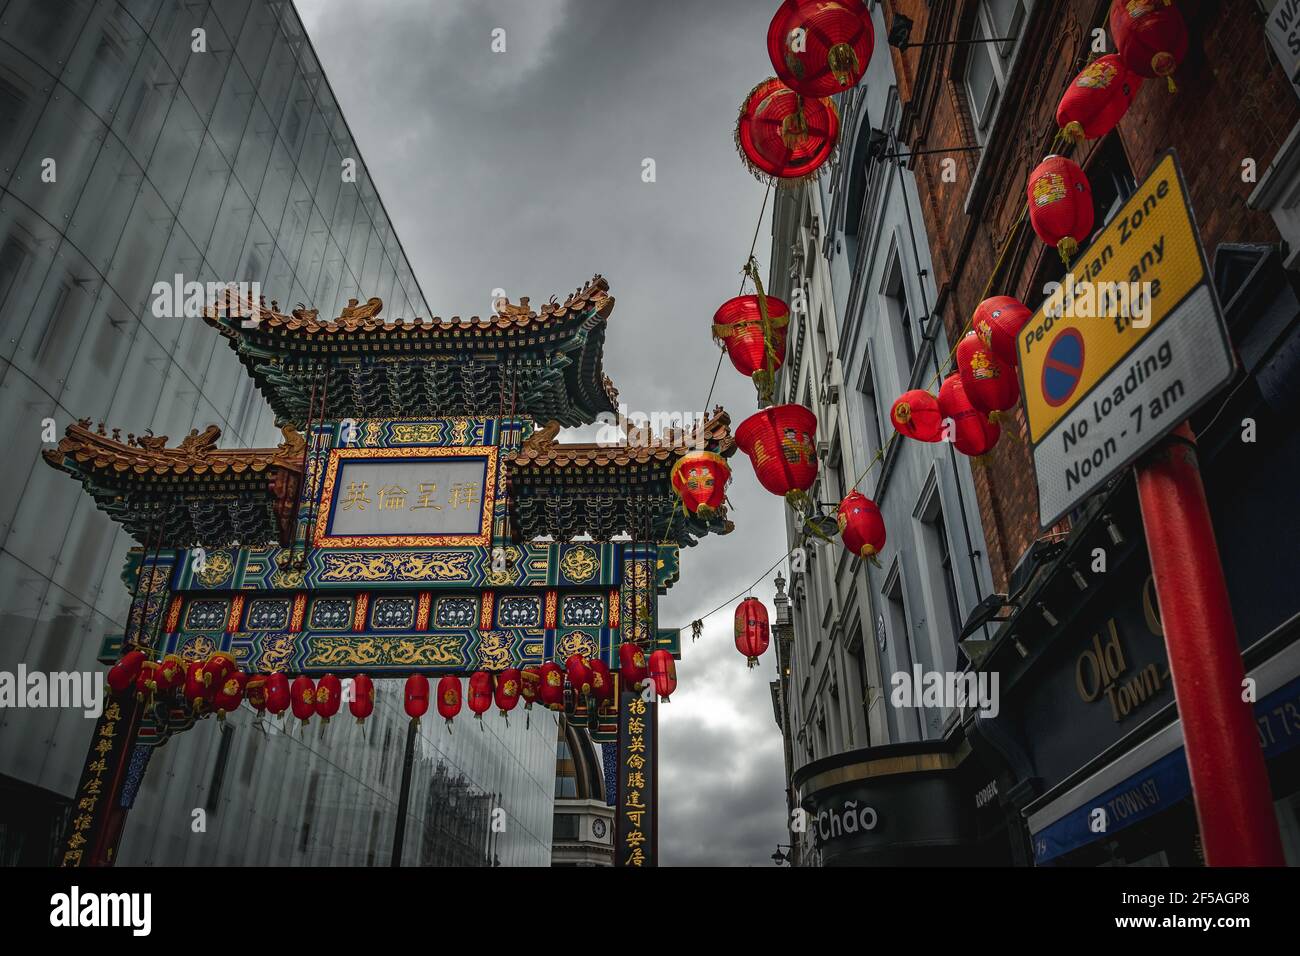 Chinatown gate a Londra, Inghilterra. Scatto da un angolo inferiore, fatto che dà potenza al soggetto (gate) Foto Stock